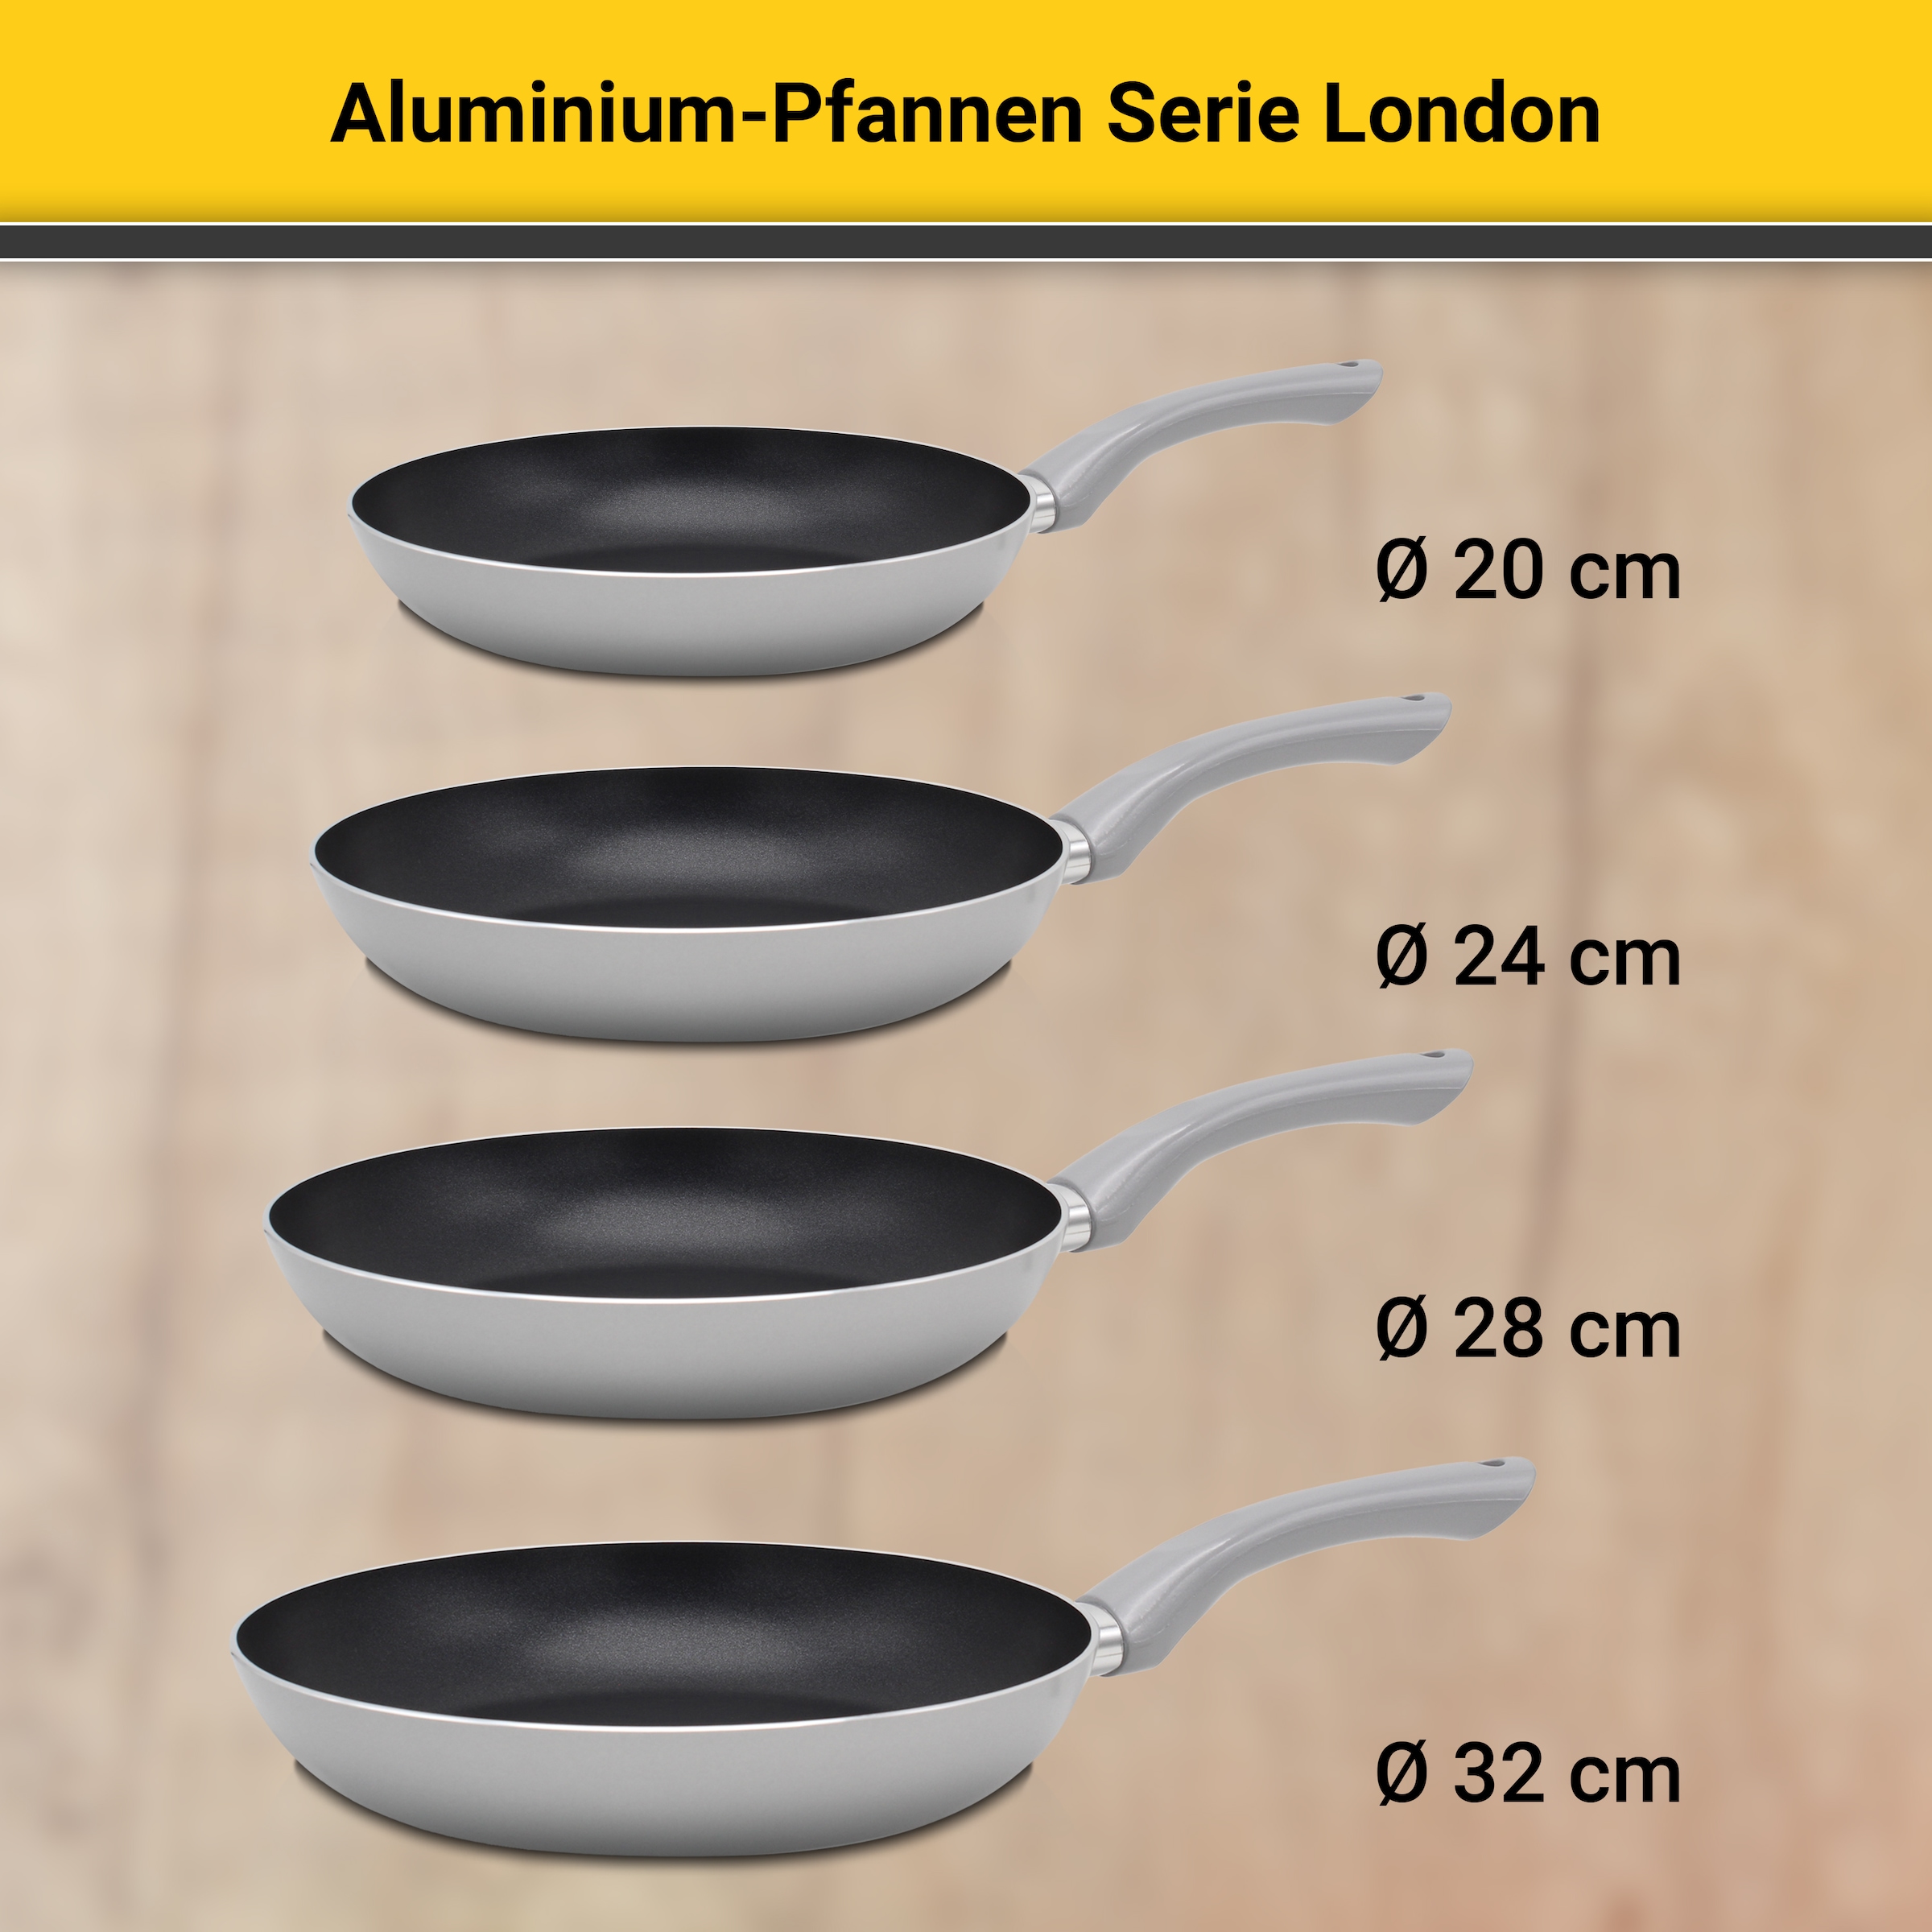 Krüger Pfannen-Set »Aluminium Pfannenset London, 4 tlg.«, Aluminium, (Set, 4 tlg., je 1 Bratpfanne Ø 20 /24 / 28 cm, 1 Pfannenwender), für Induktions-Kochfelder geeignet